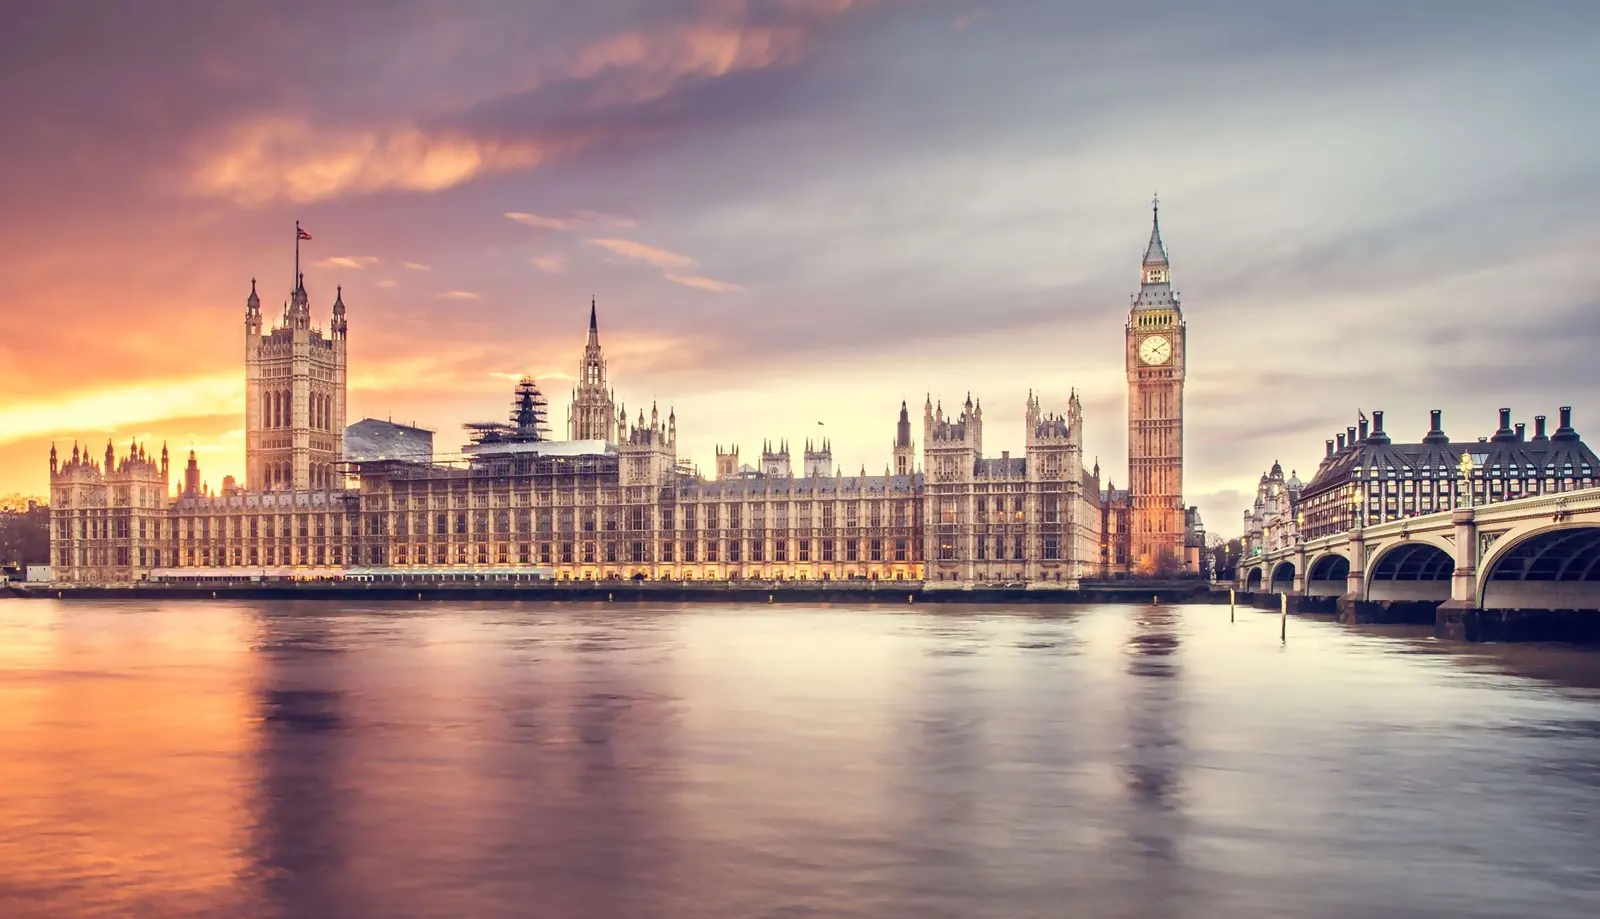 Du lịch London - Khám phá Thủ đô Anh Quốc